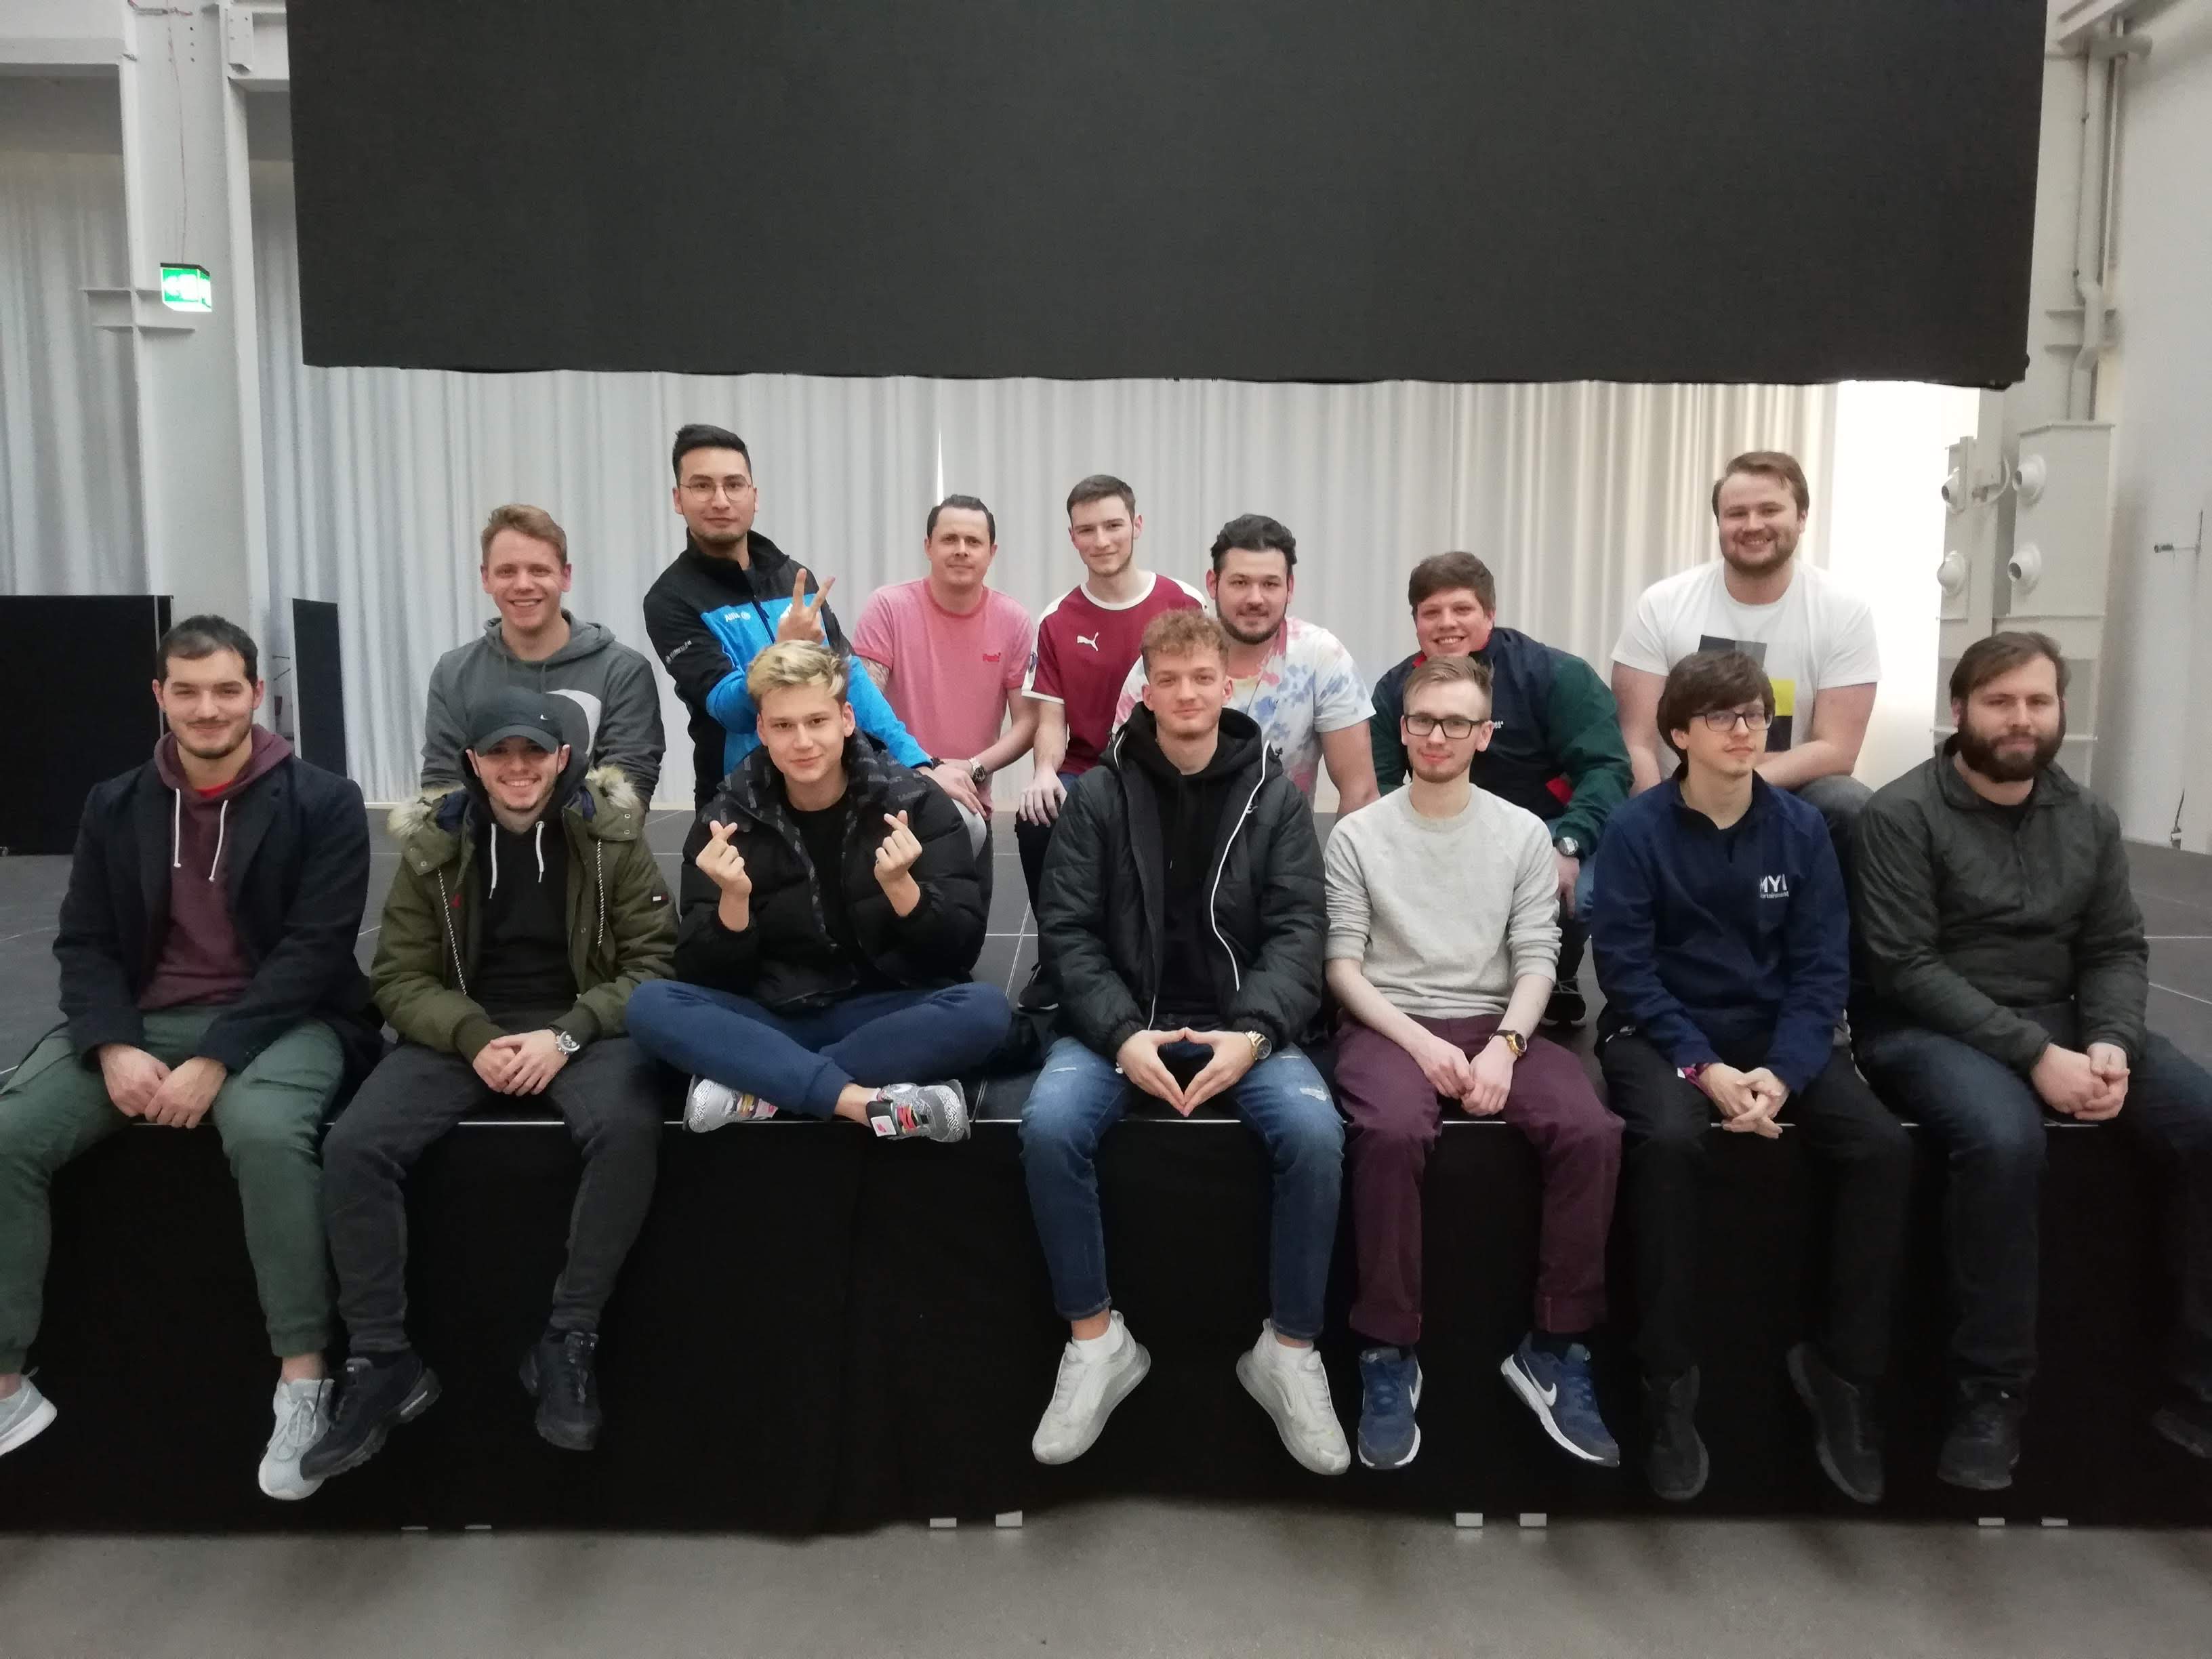 Ein Bild von allen Spielern, welche mitgemacht haben am Bootcamp für die RedBull unEversE 2020.